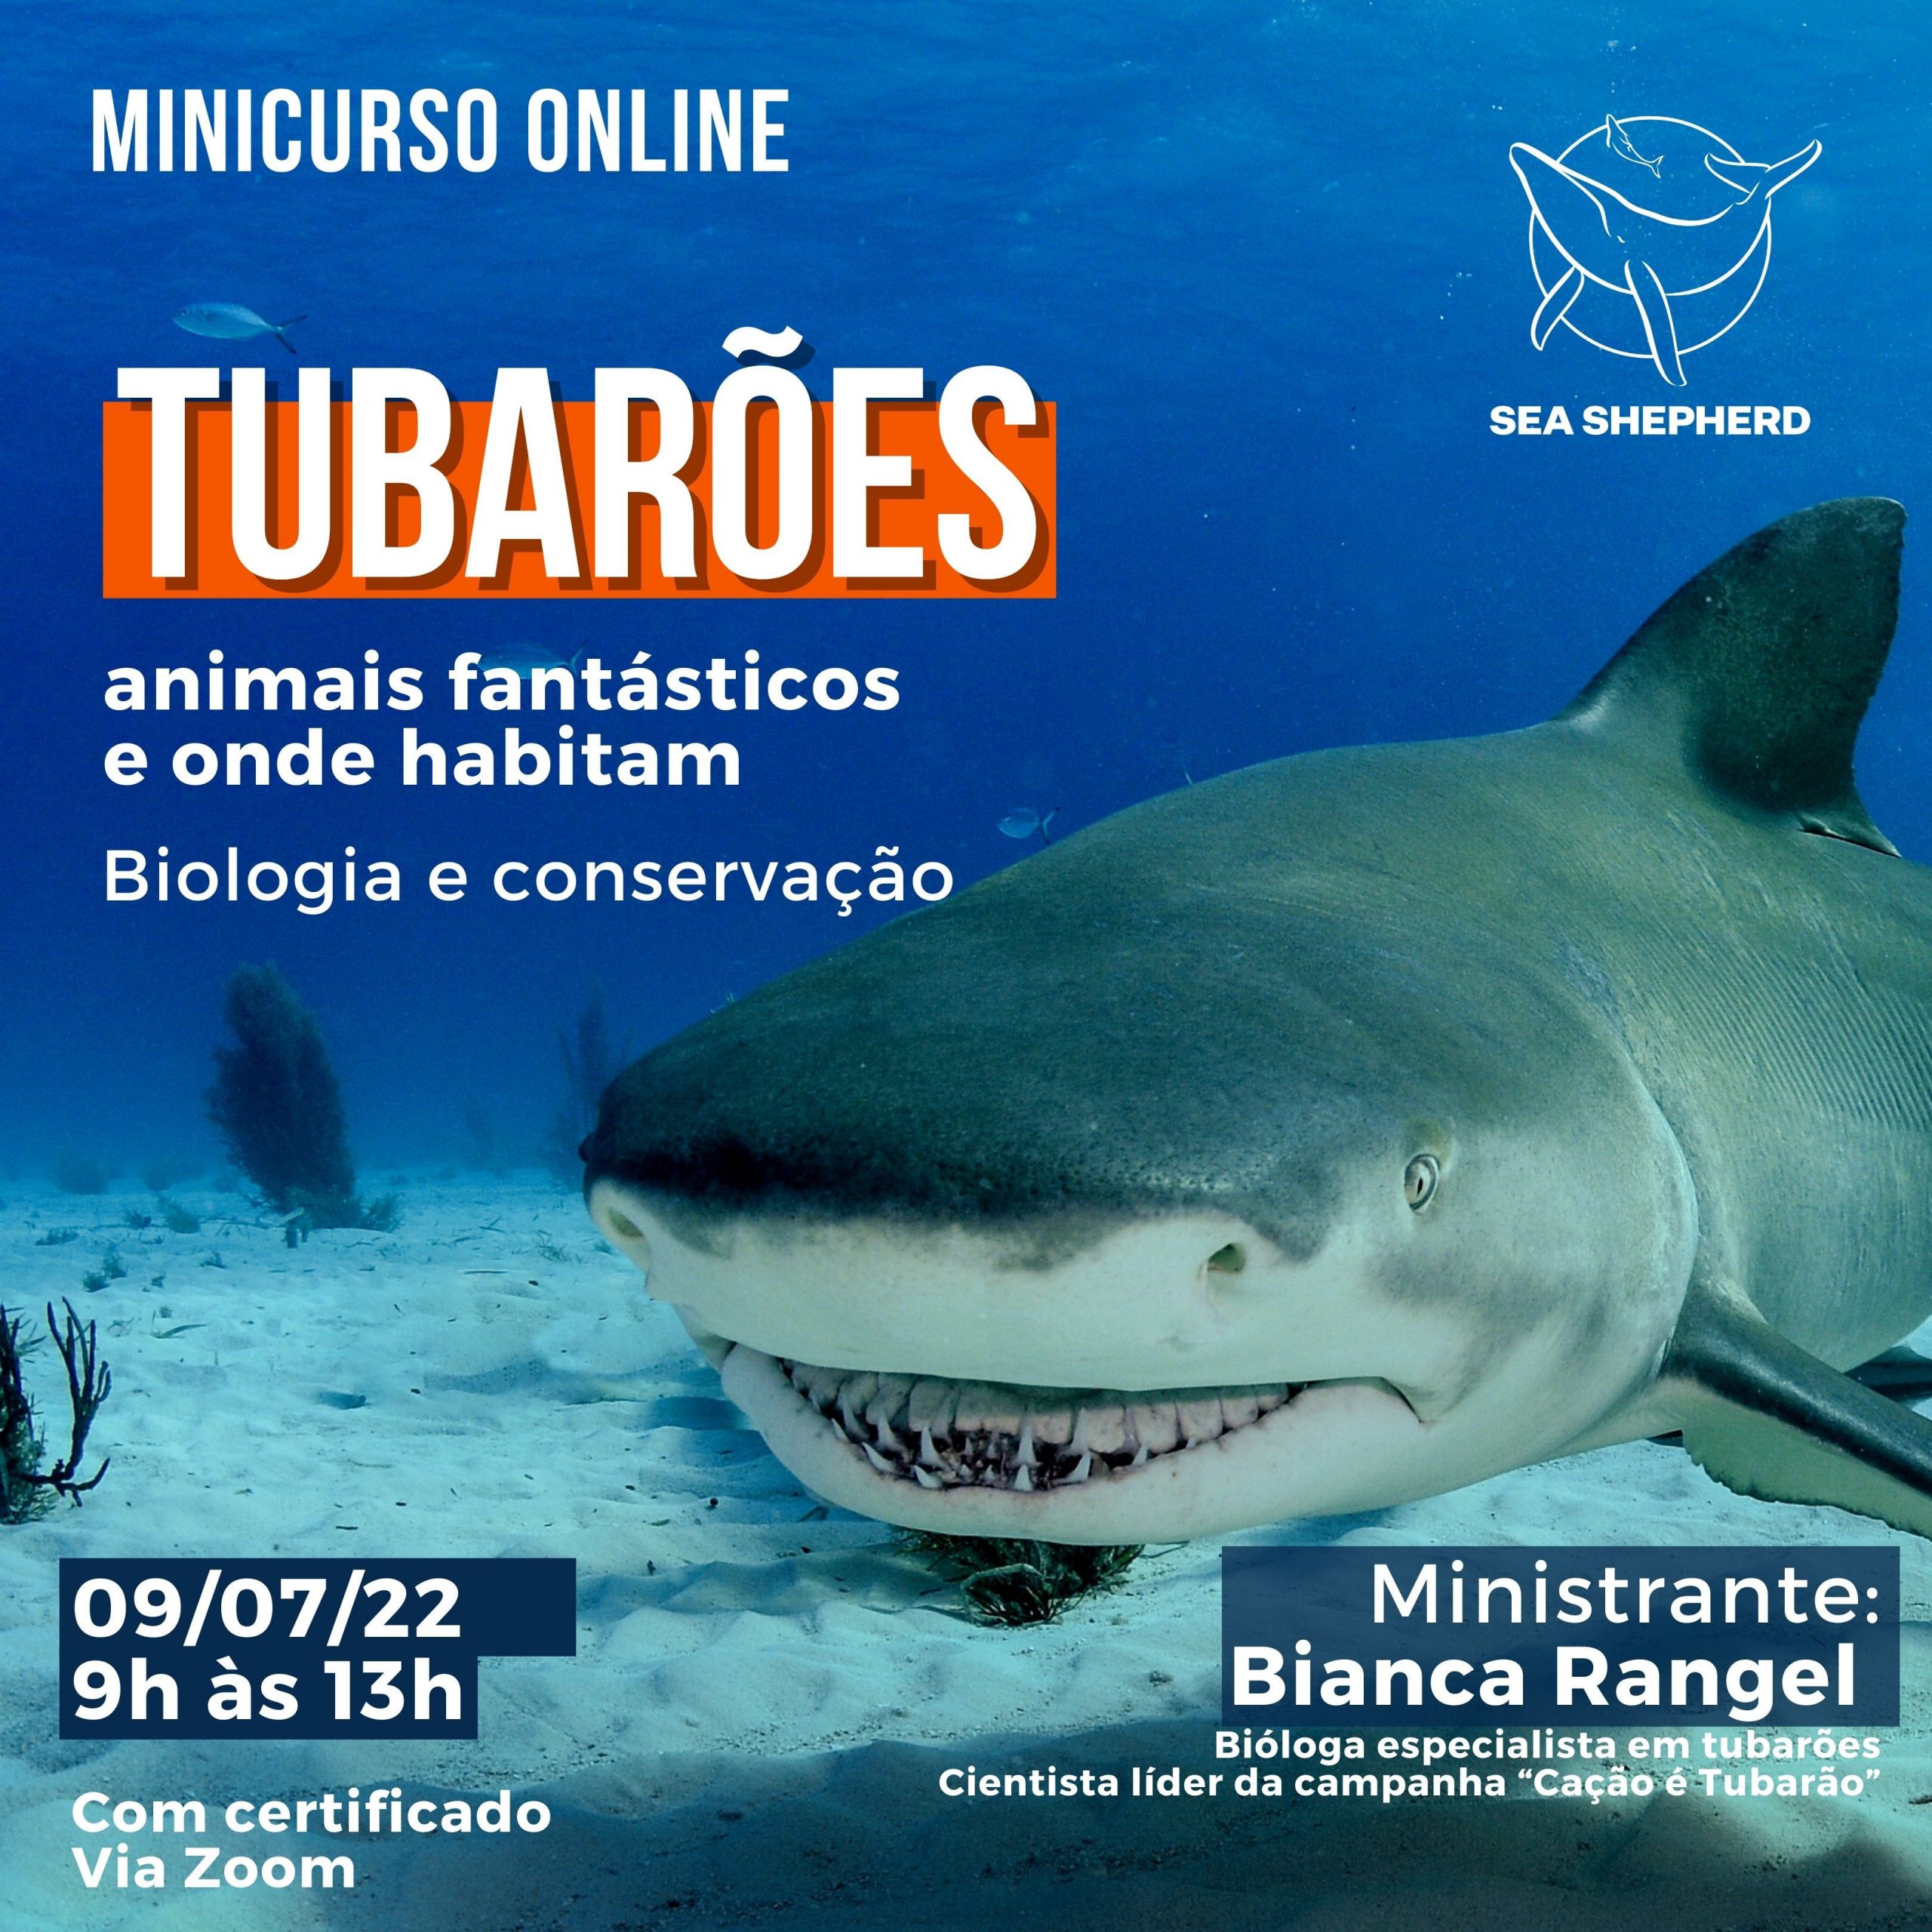 Minicurso online sobre Tubarões